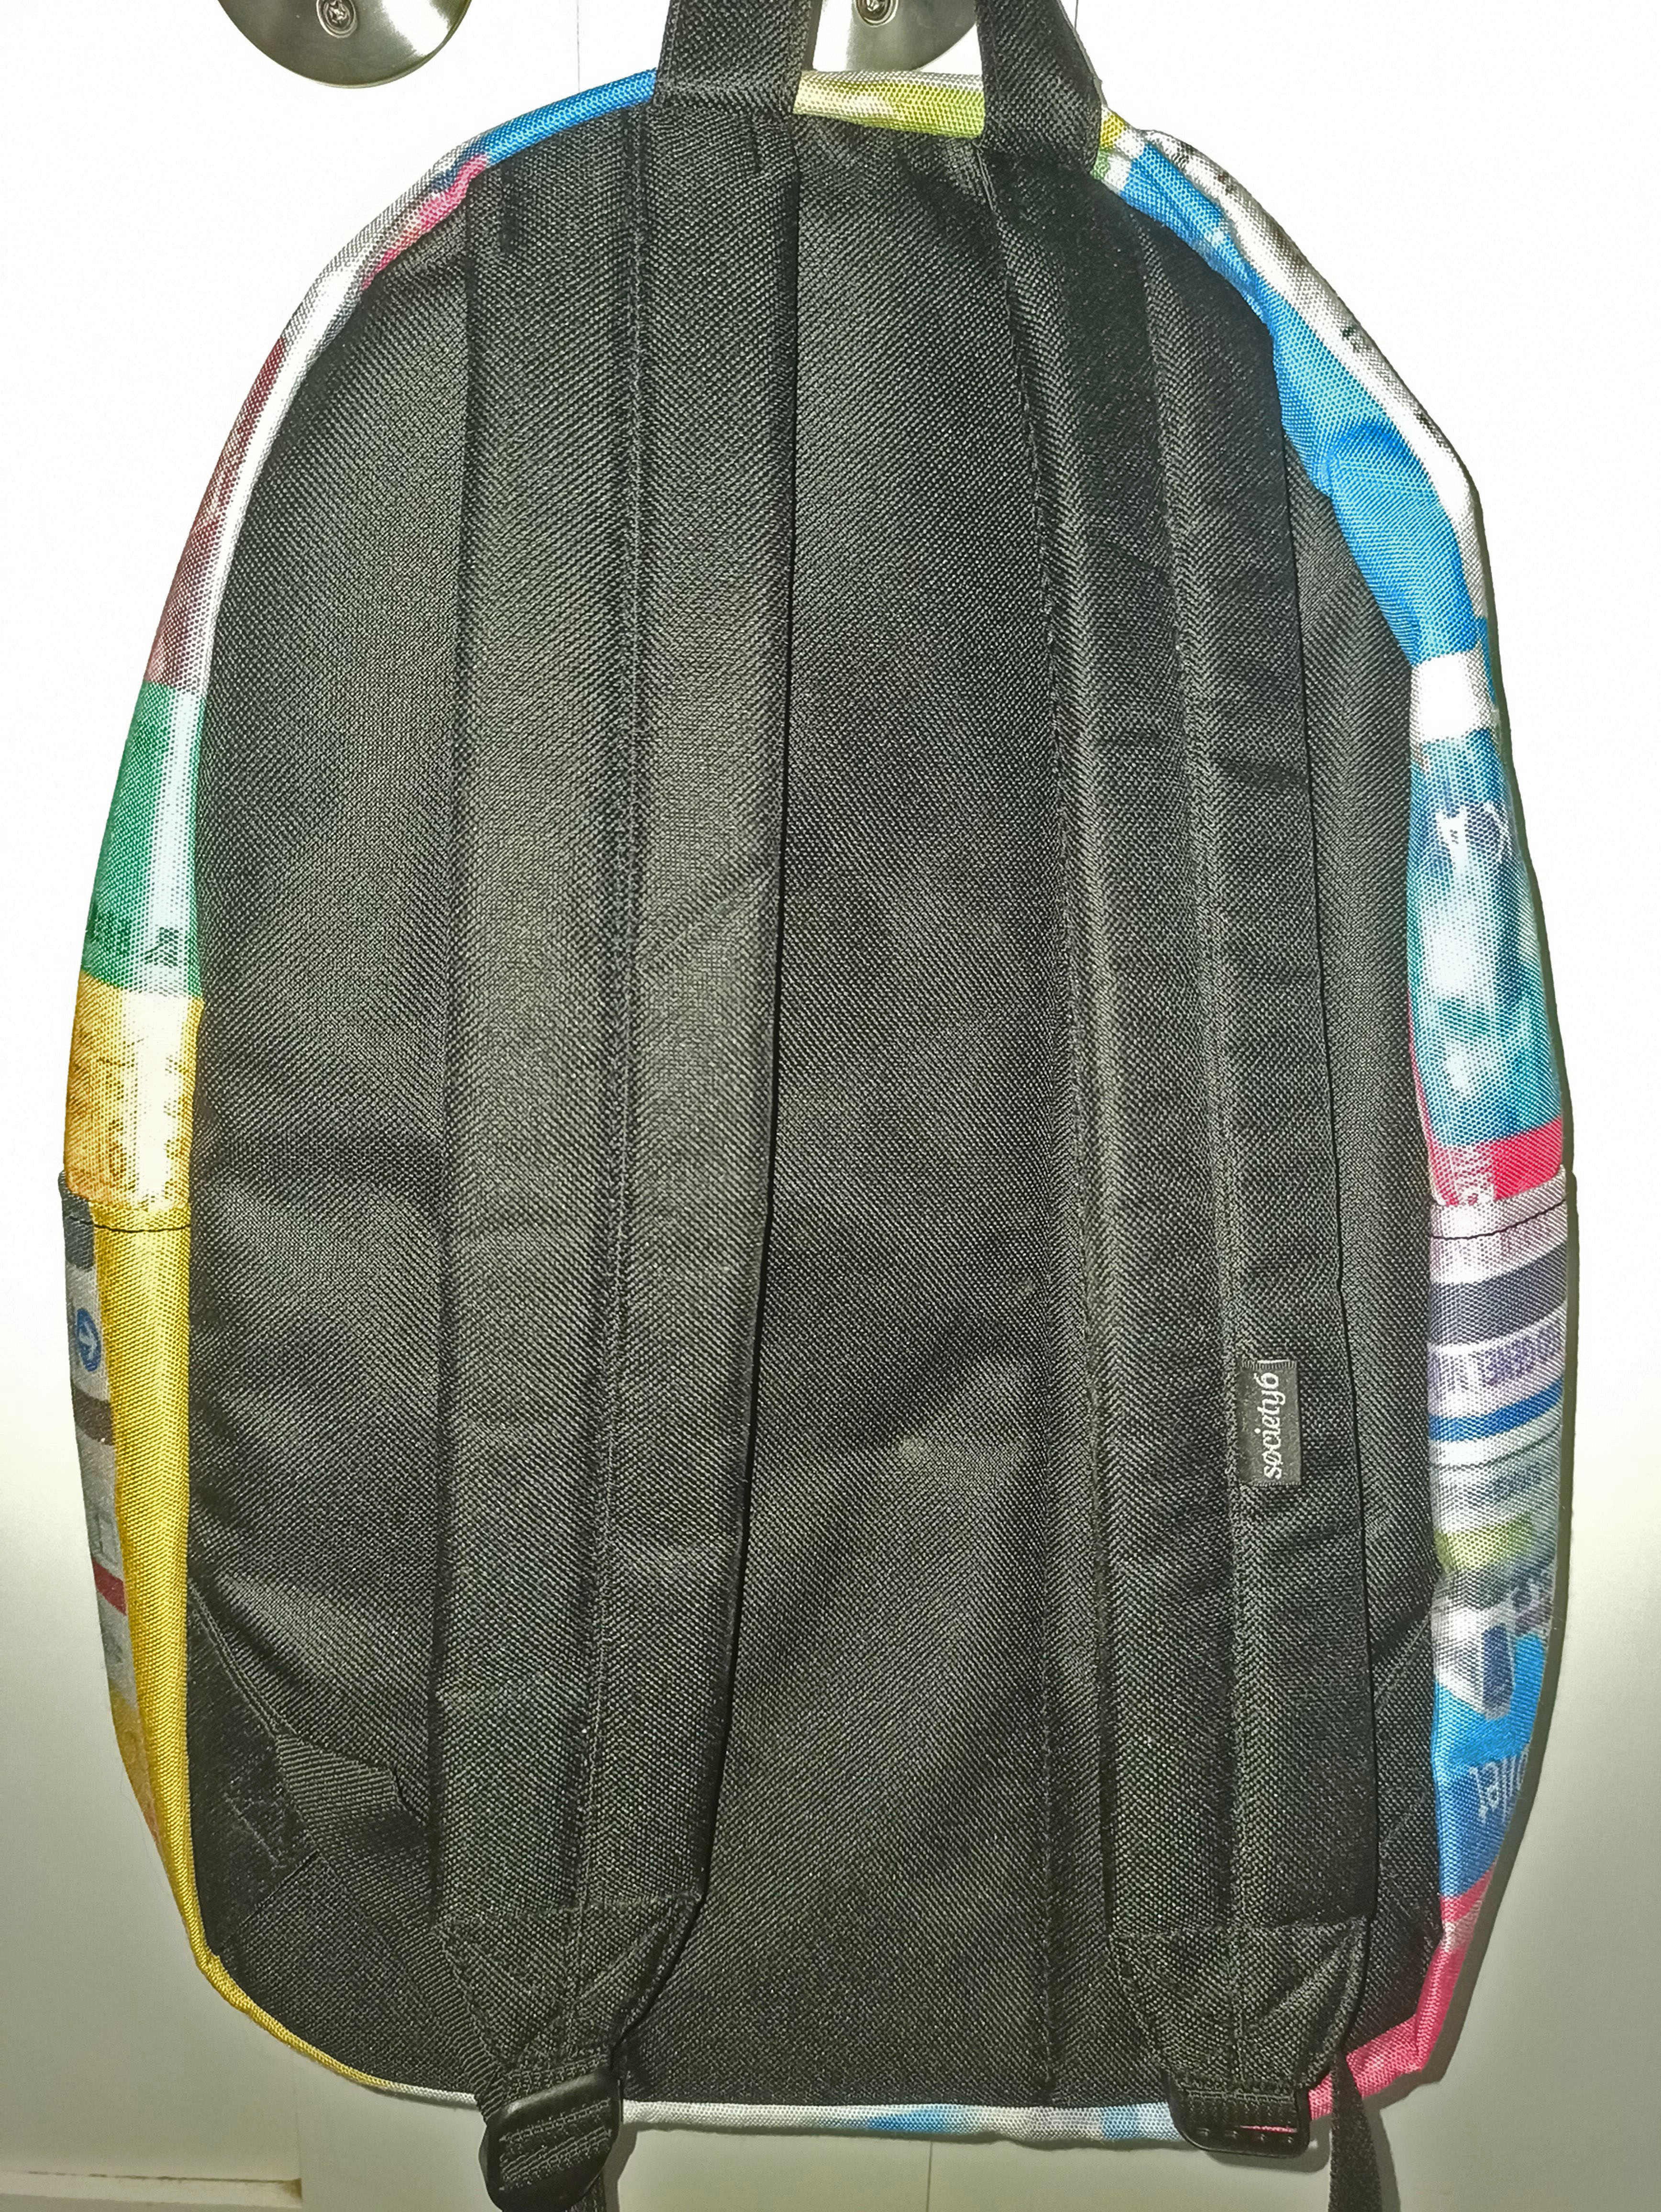 public transit backpack backside